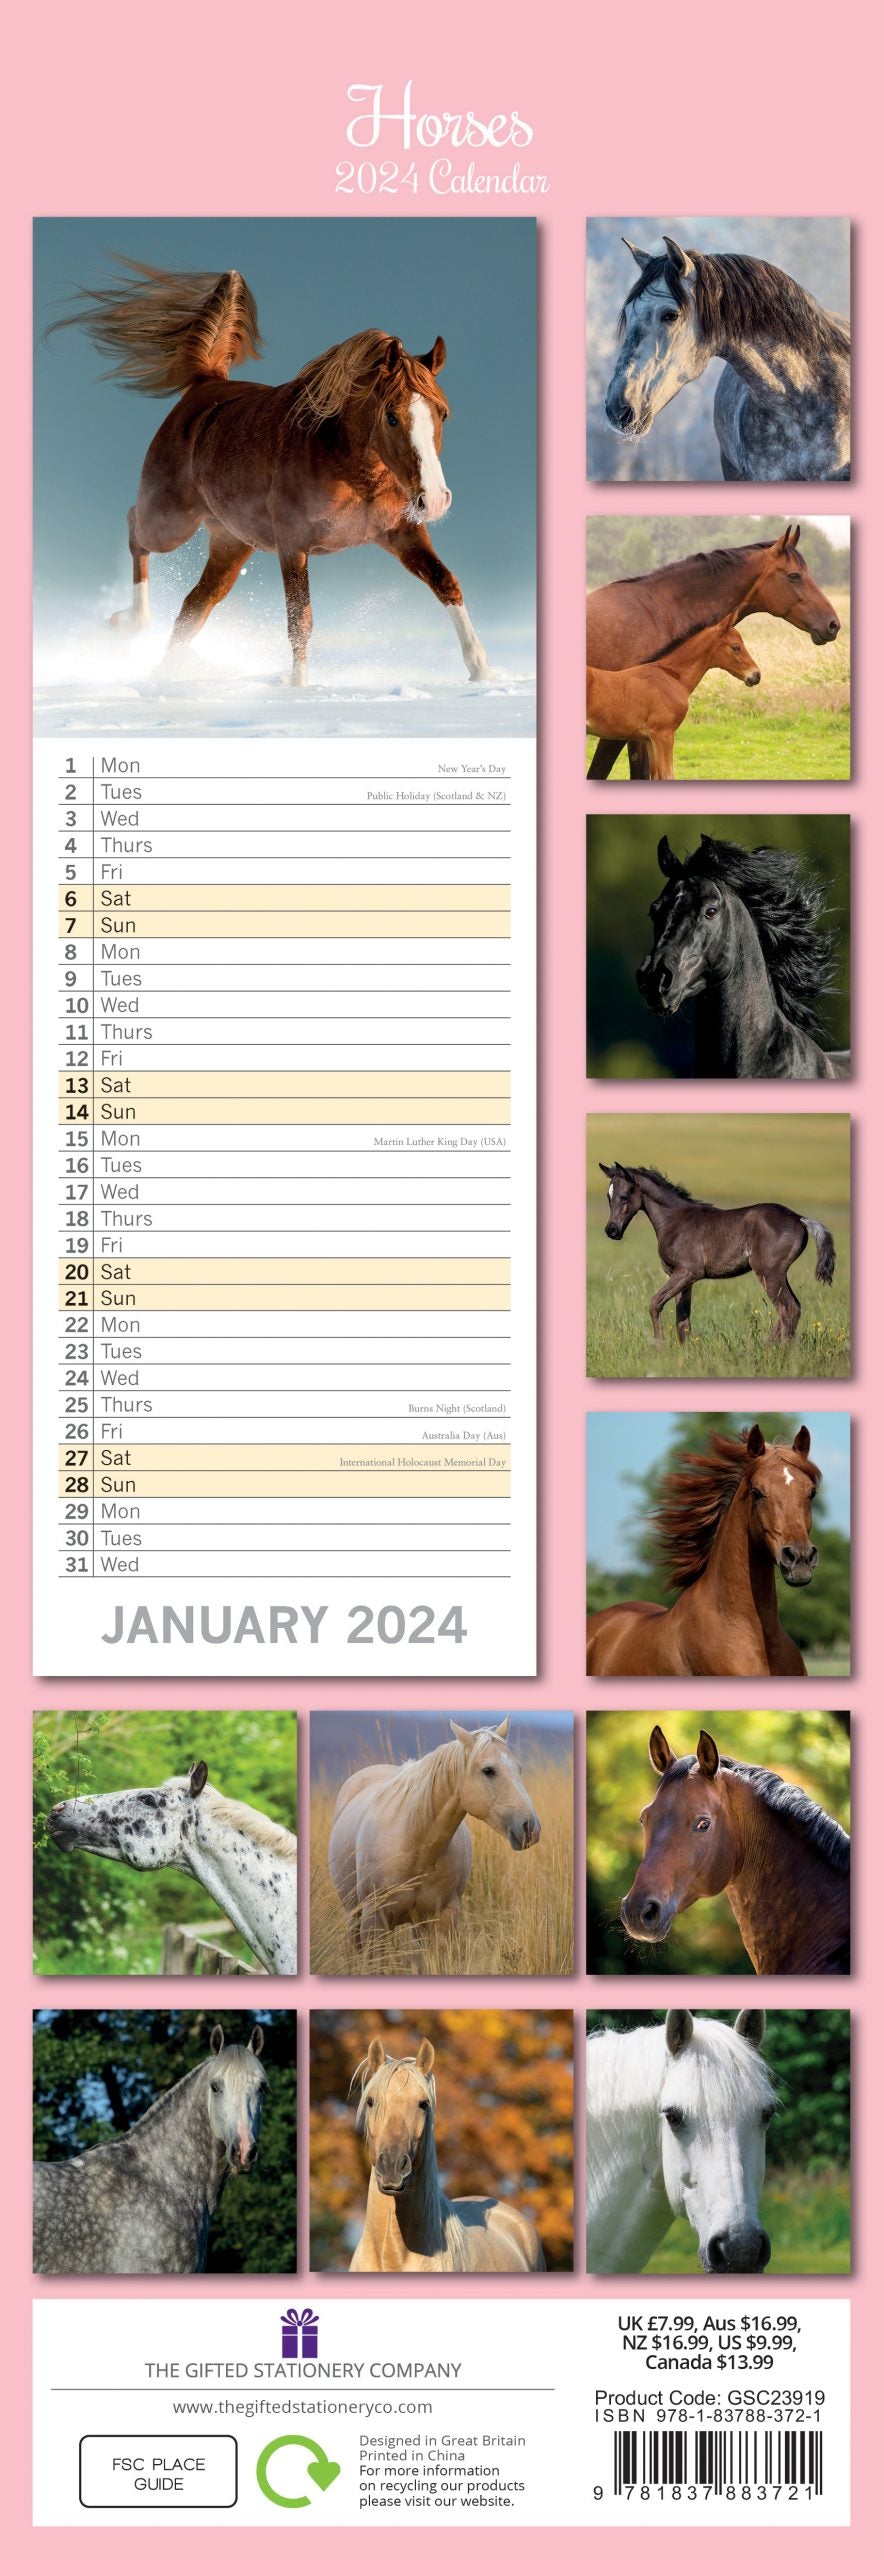 Horses - 2024 Slimline Slim Wall Calendar Hanging Planner New Year Gift